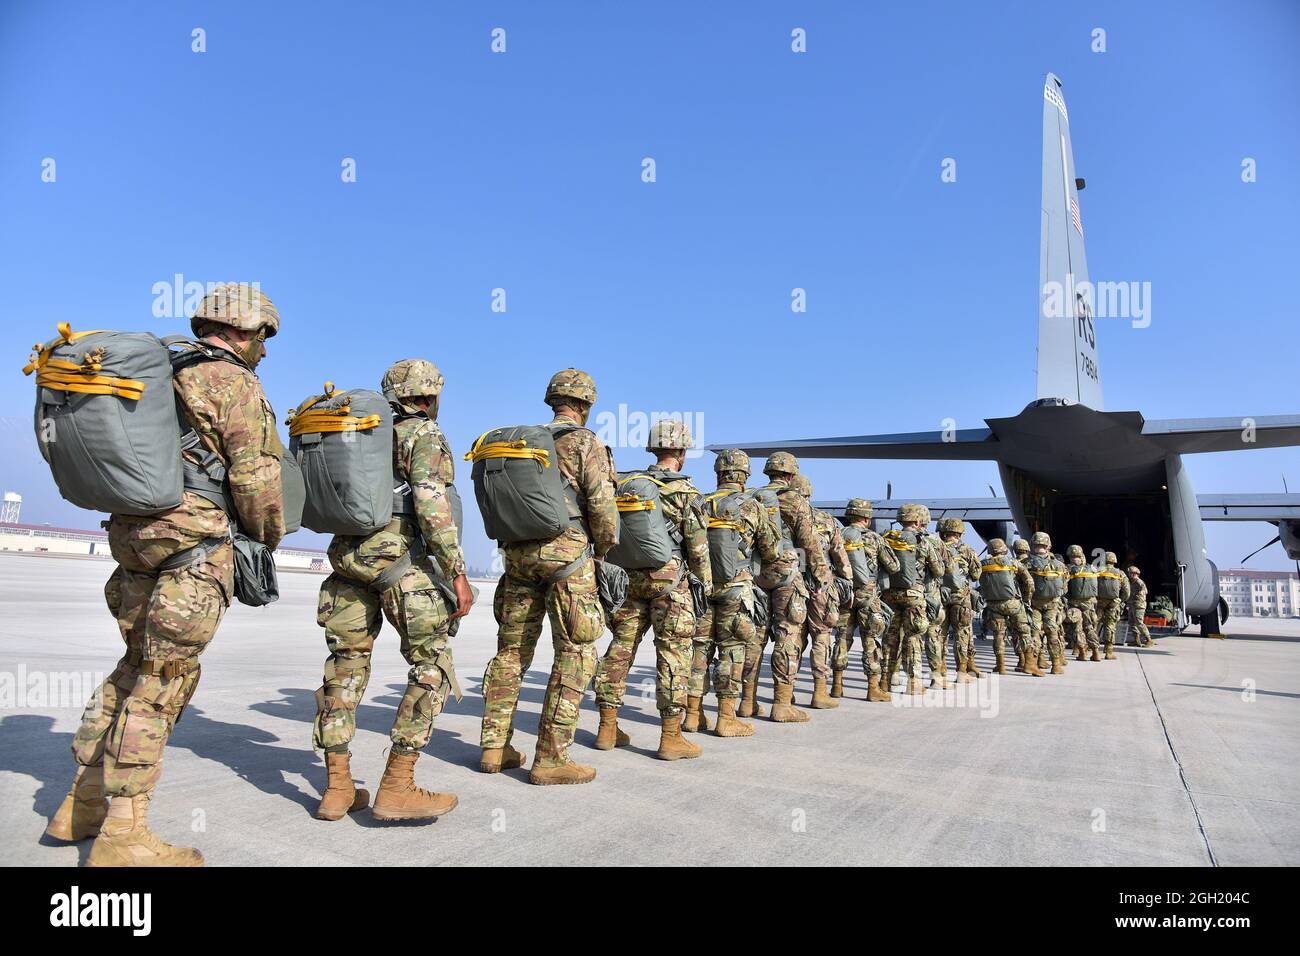 Los paracaidistas del Ejército de los Estados Unidos asignados a la Brigada Aerotransportada de 173rd, se preparan para embarcar en un avión Hércules de la Fuerza Aérea de los Estados Unidos C-130 desde el Ala Aérea de 86th en AVI Foto de stock